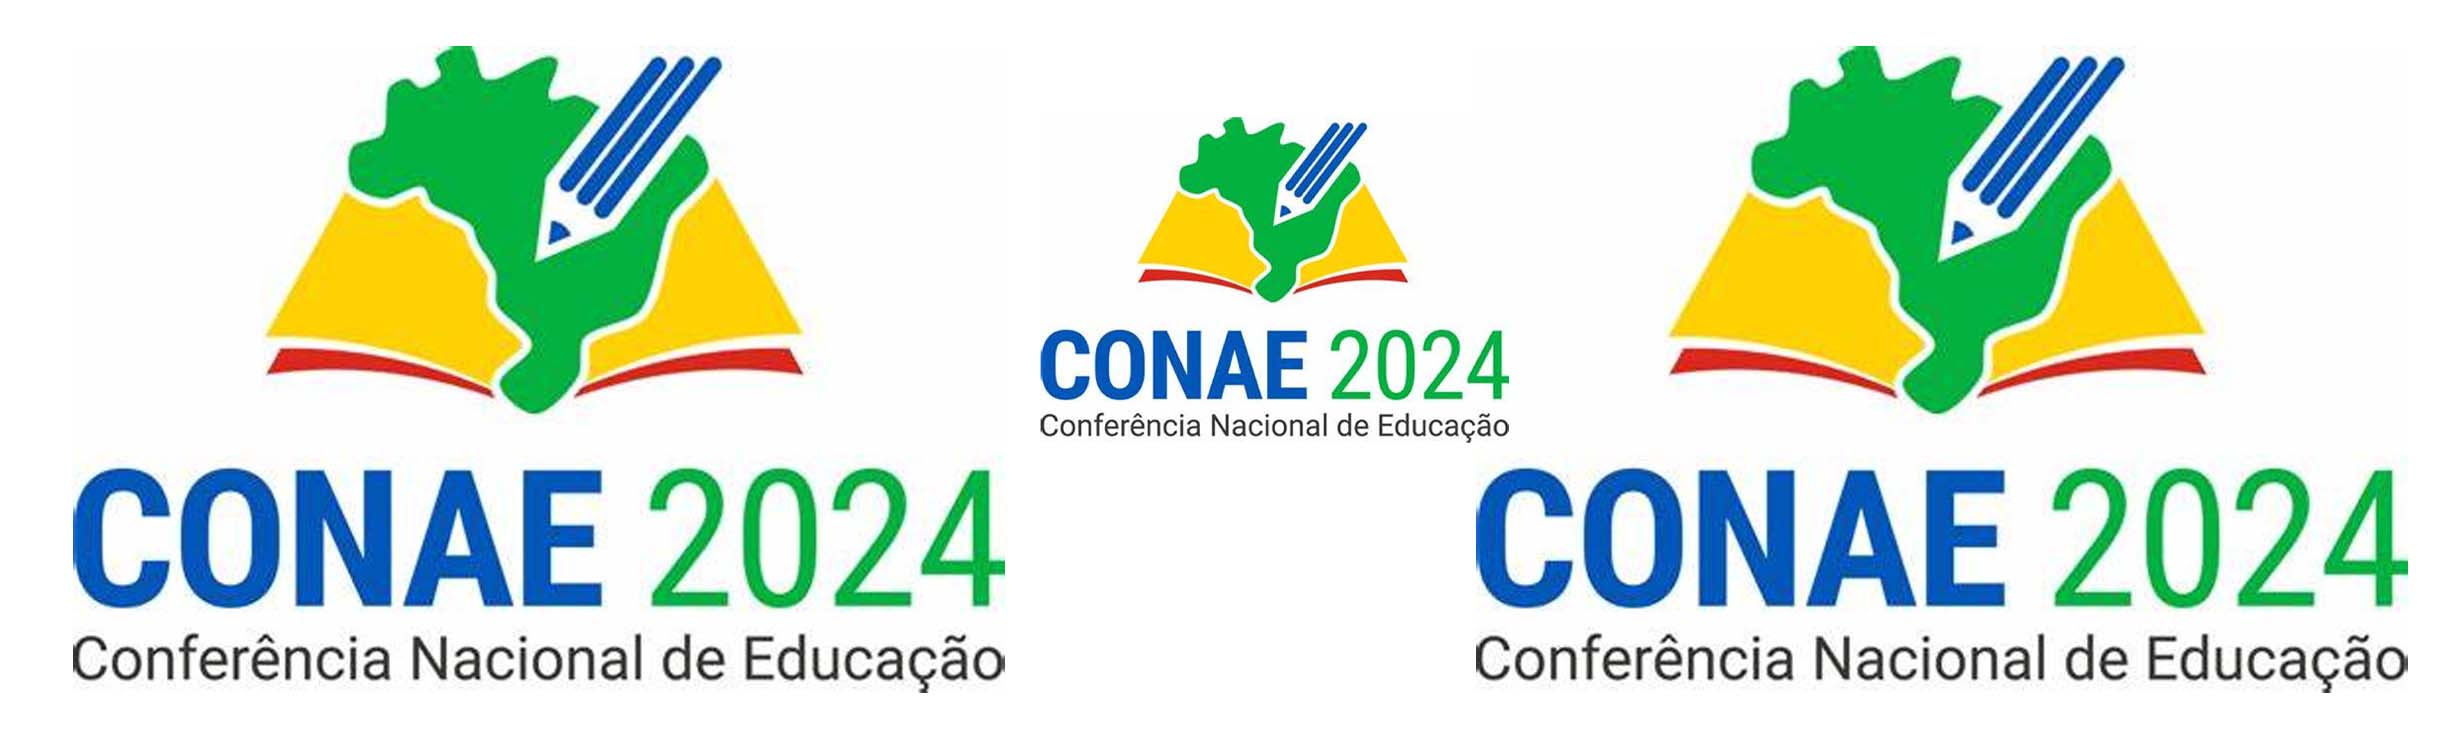 Conferência Nacional de Educação, em Brasília, vai debater plano para os próximos 10 anos. Sinteps estará presente na defesa da educação profissional e tecnológica pública